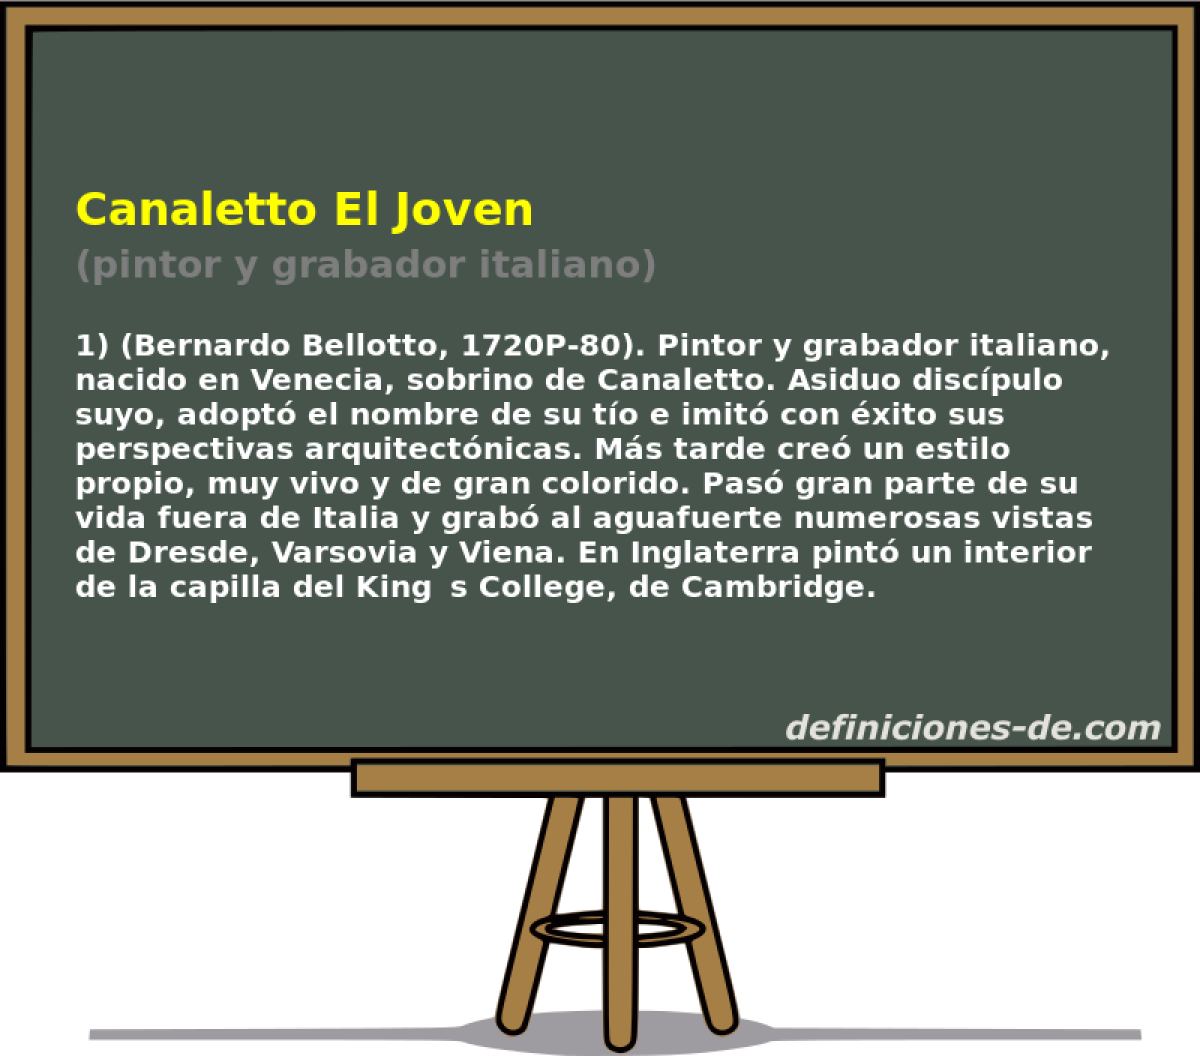 Canaletto El Joven (pintor y grabador italiano)